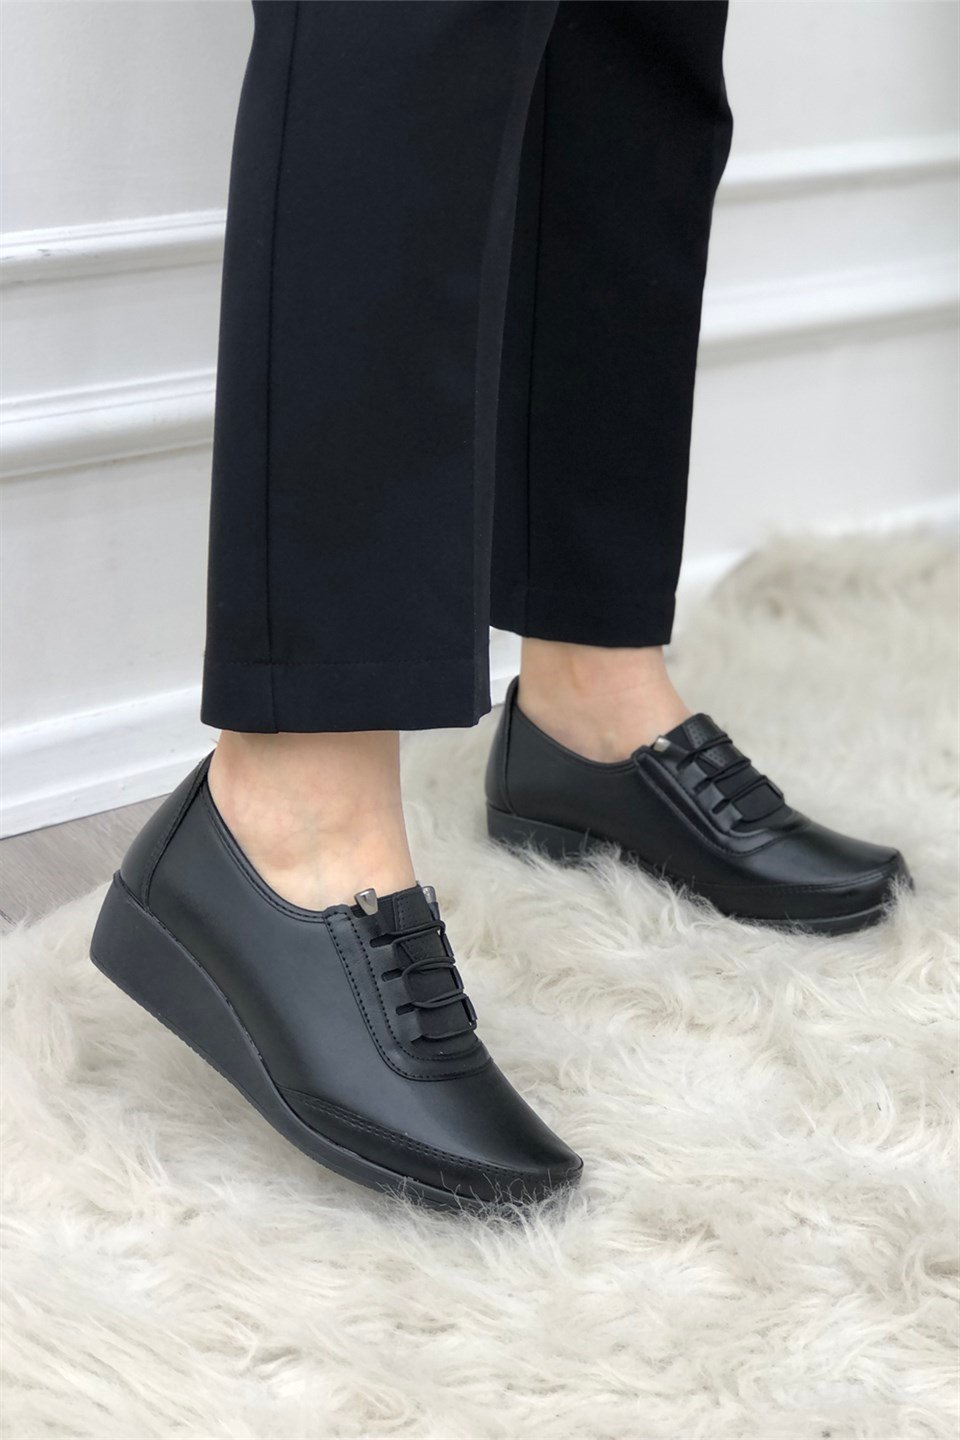 Wanetti Mevsimlik Ortopedik Confort Termo Kadın Ayakkabı Siyah 310-1 |  Mybella Shoes